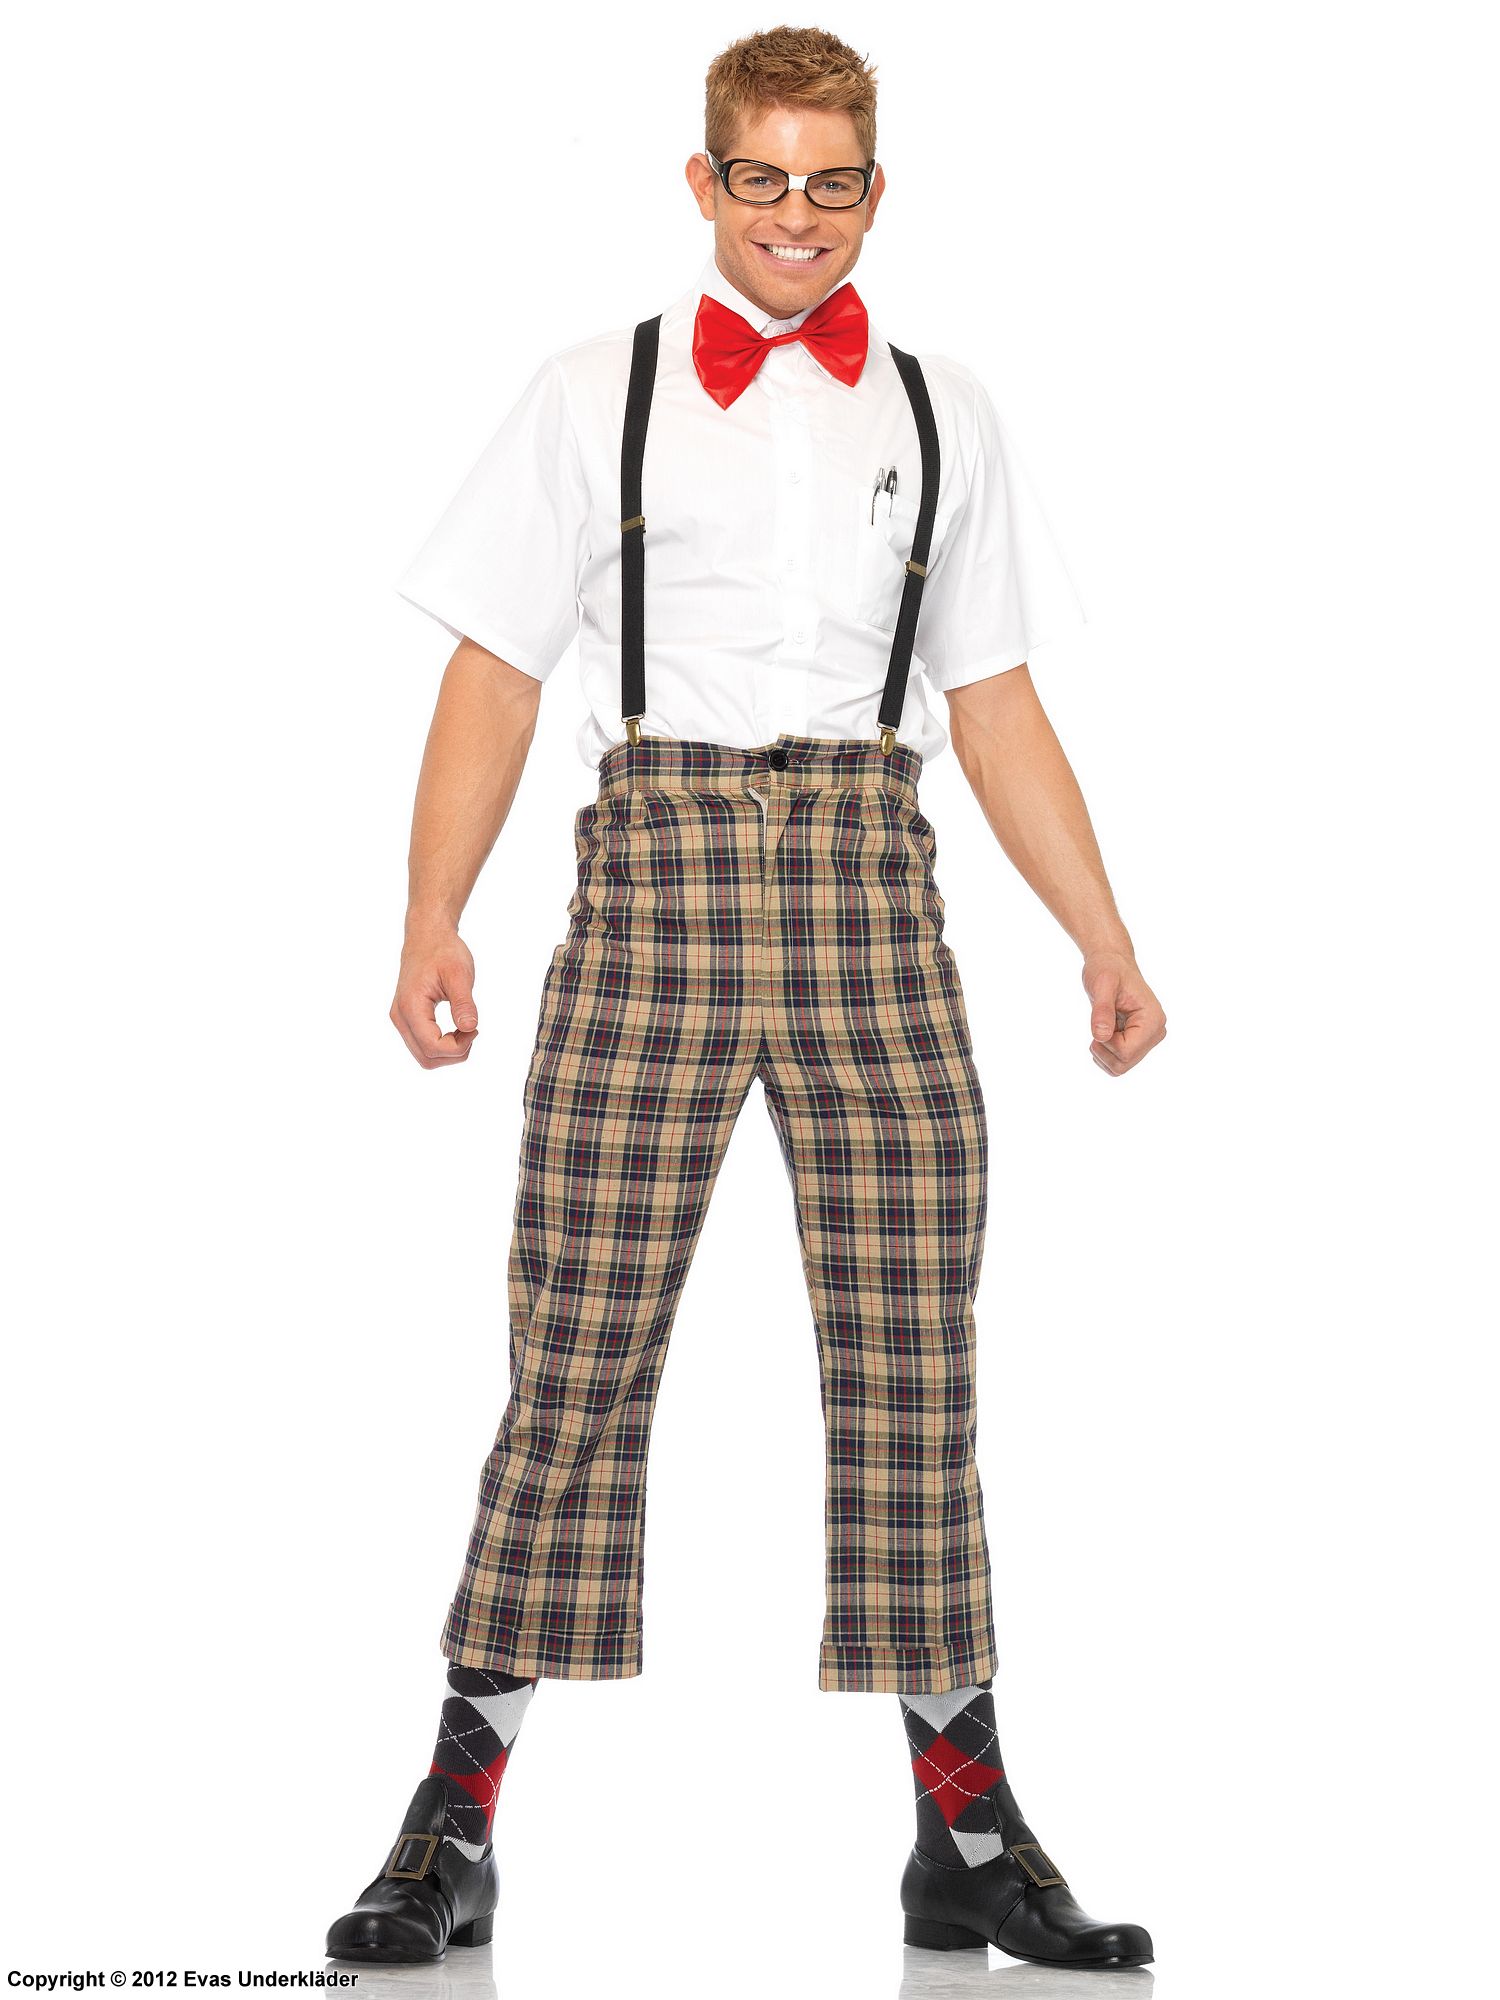 Nerd, costume set, suspenders, bow tie, scott-checkered pattern